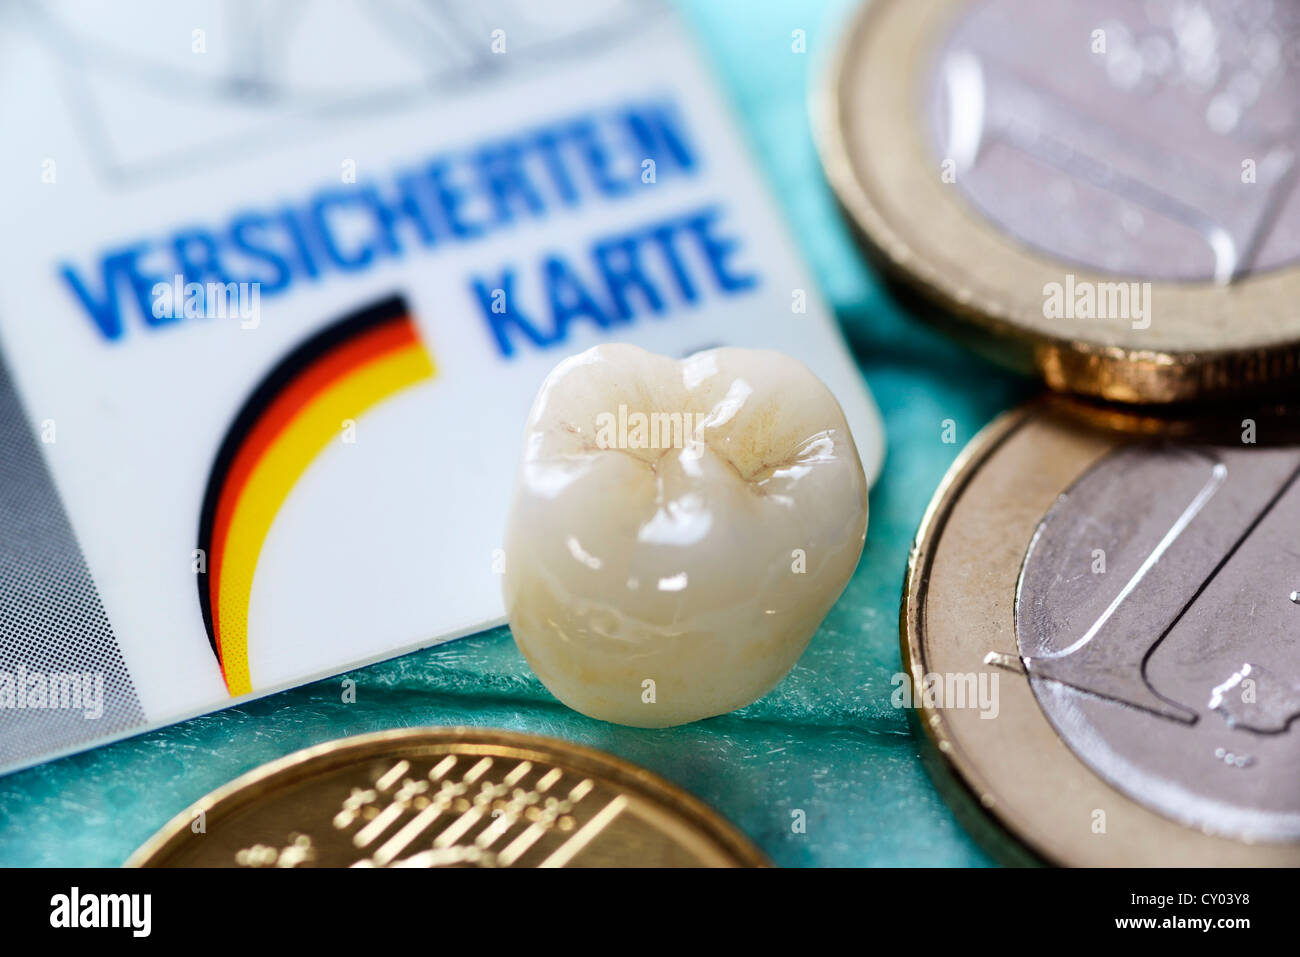 Versicherungskarte, Krone und einen Euro-Münzen, symbolisches Bild für genauere Überwachung der Zahnärzte Rechnungen von der Krankenkasse übernommen Stockfoto